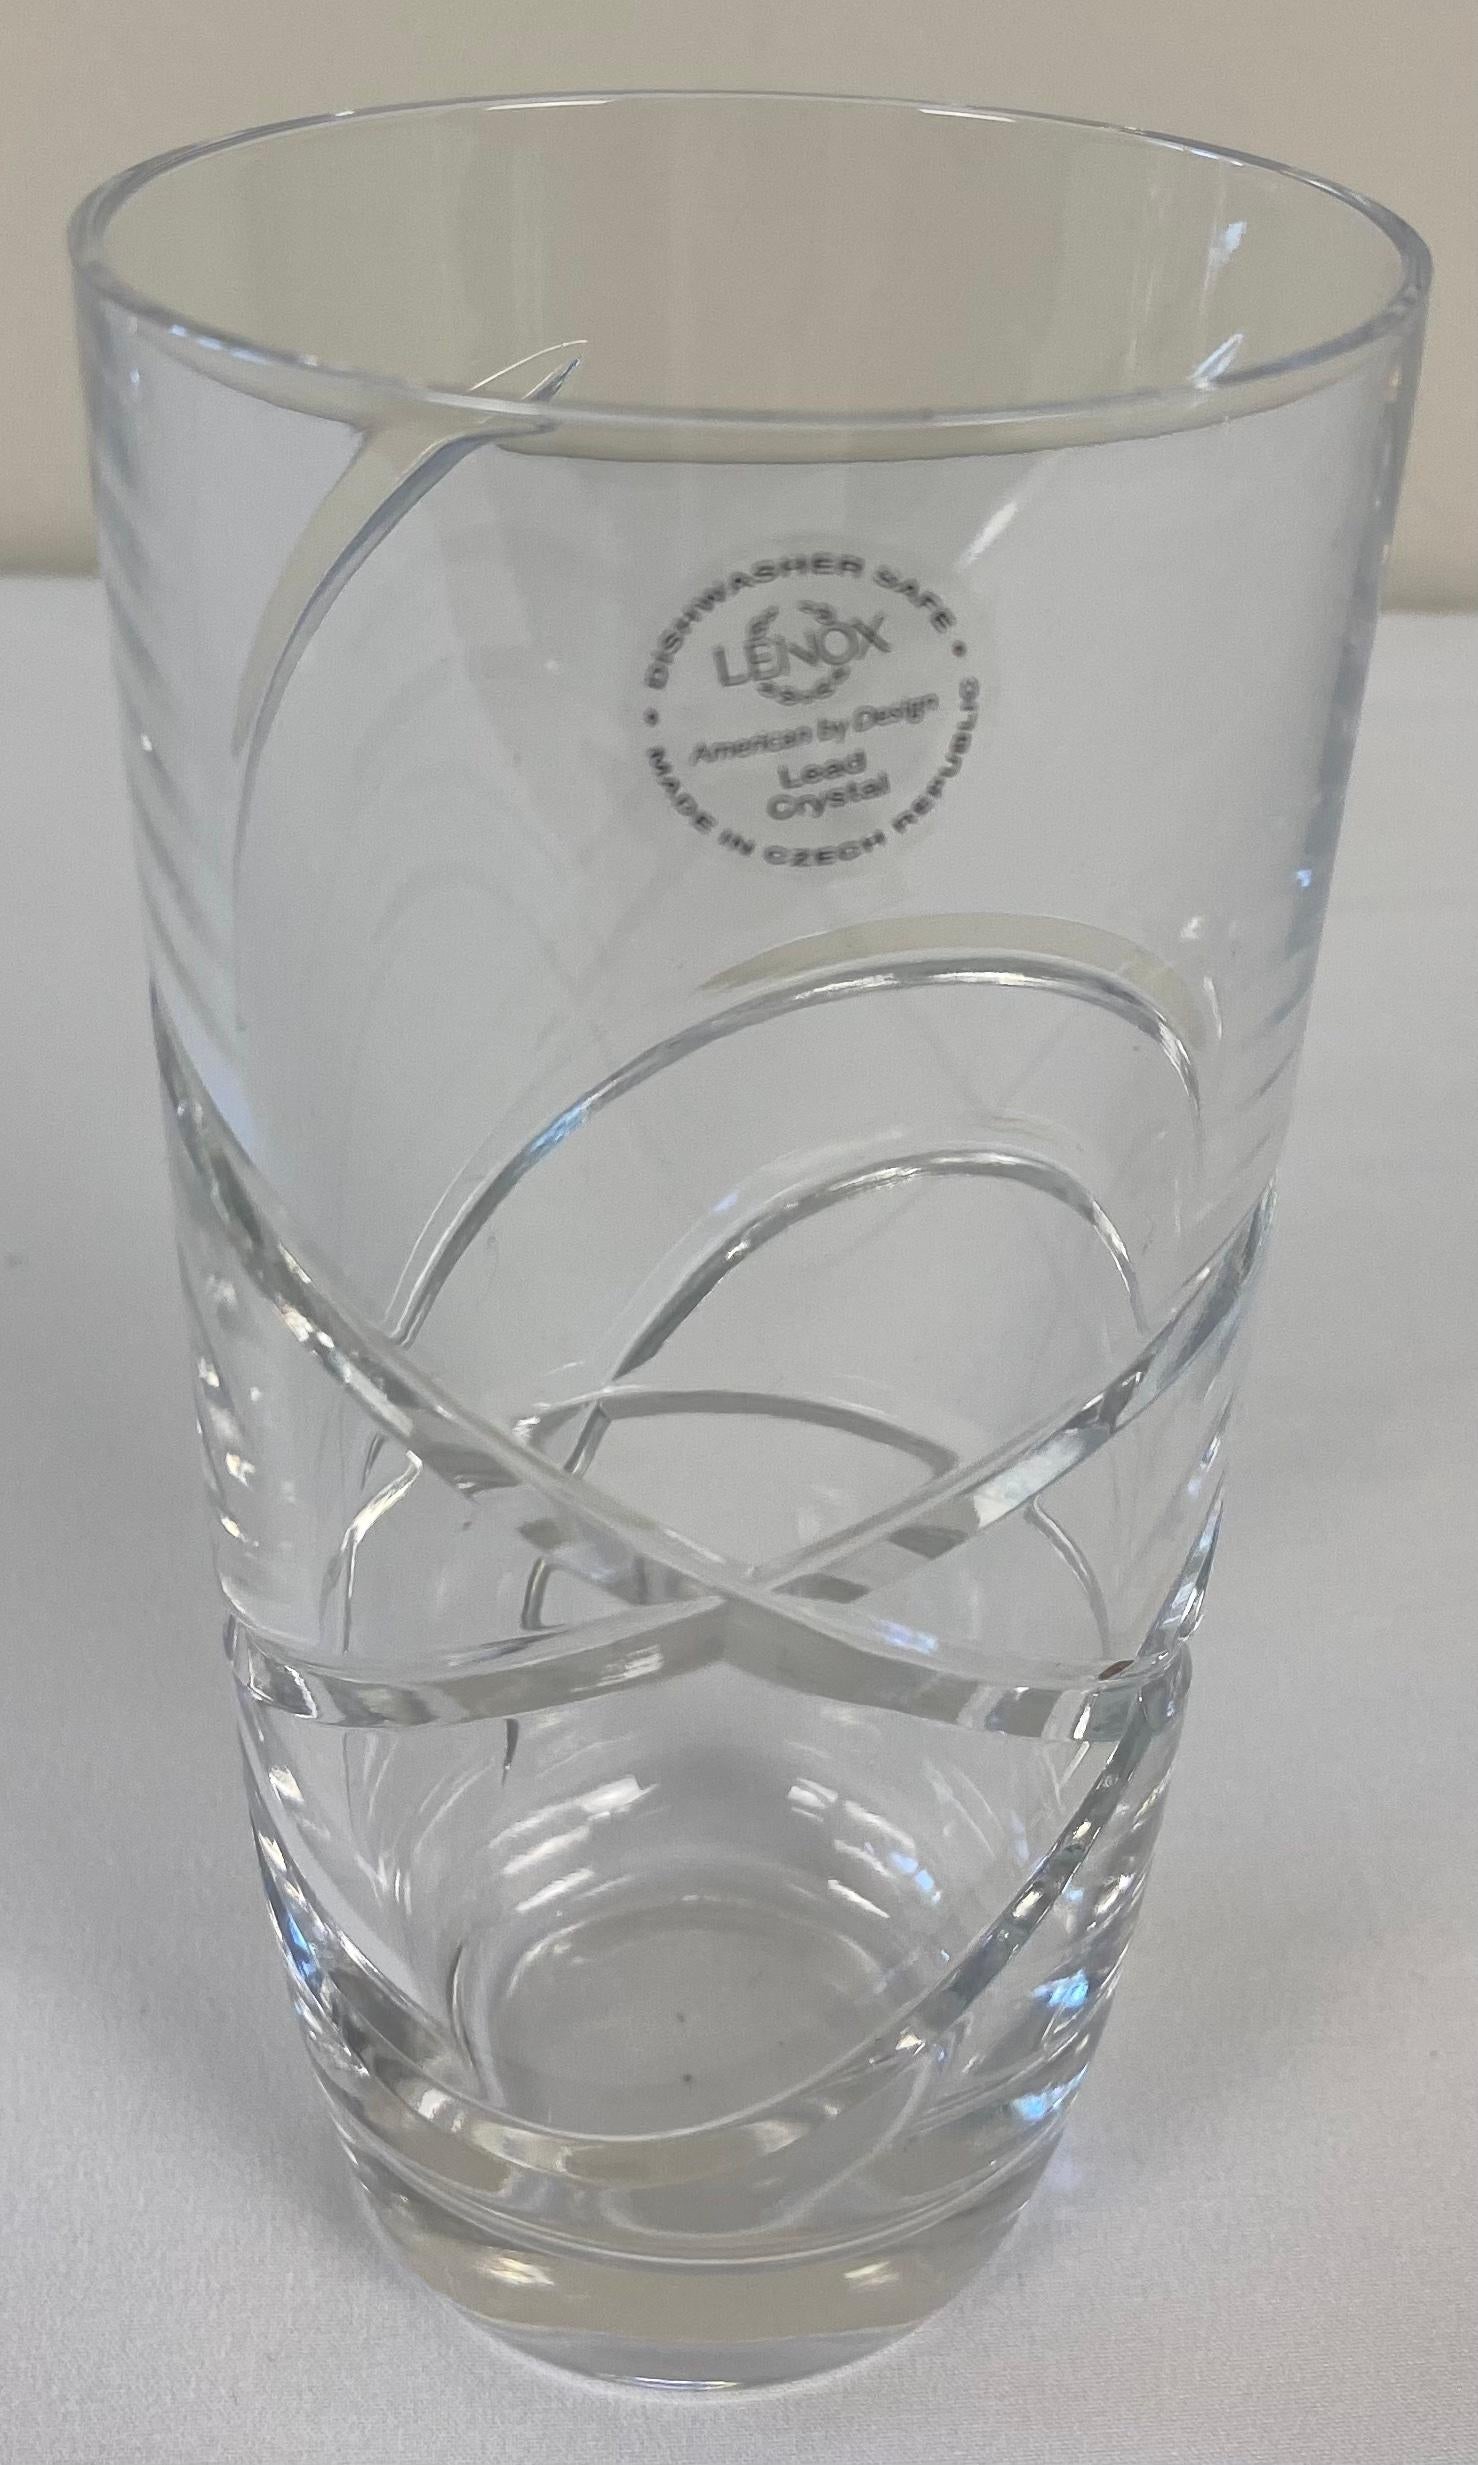 lenox water glasses